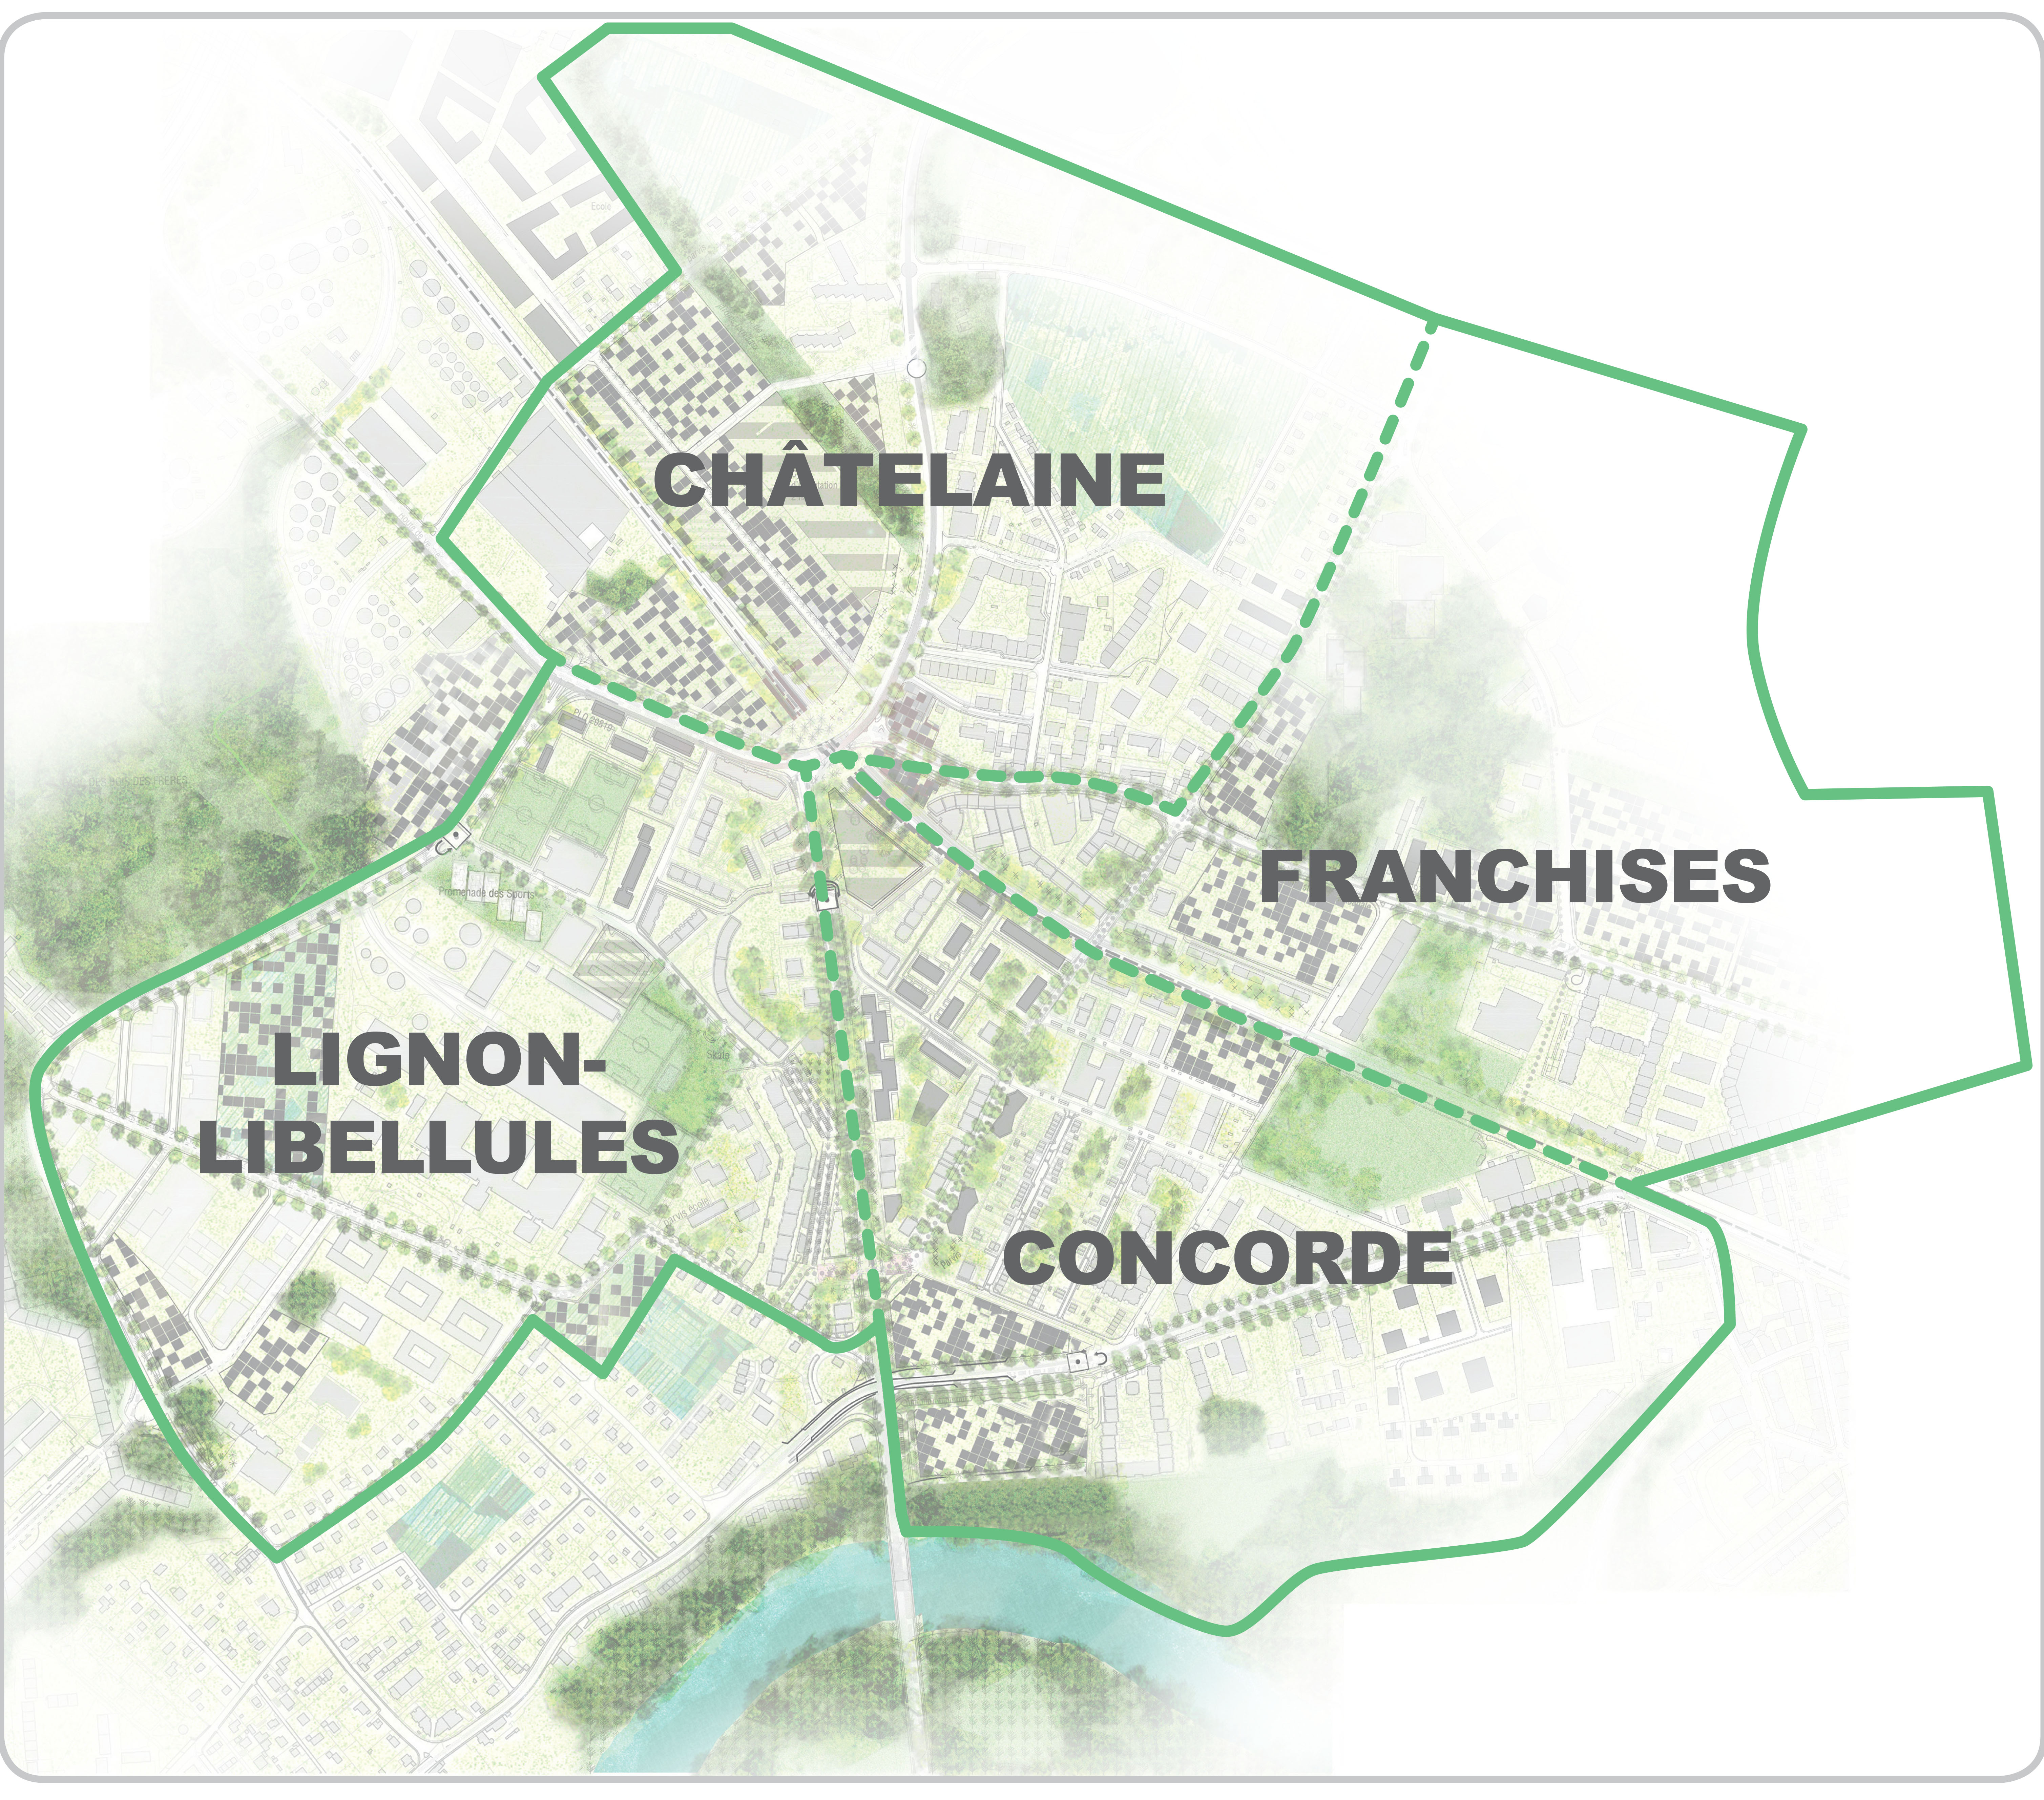 Plan des 4 secteurs du grand projet Châtelaine